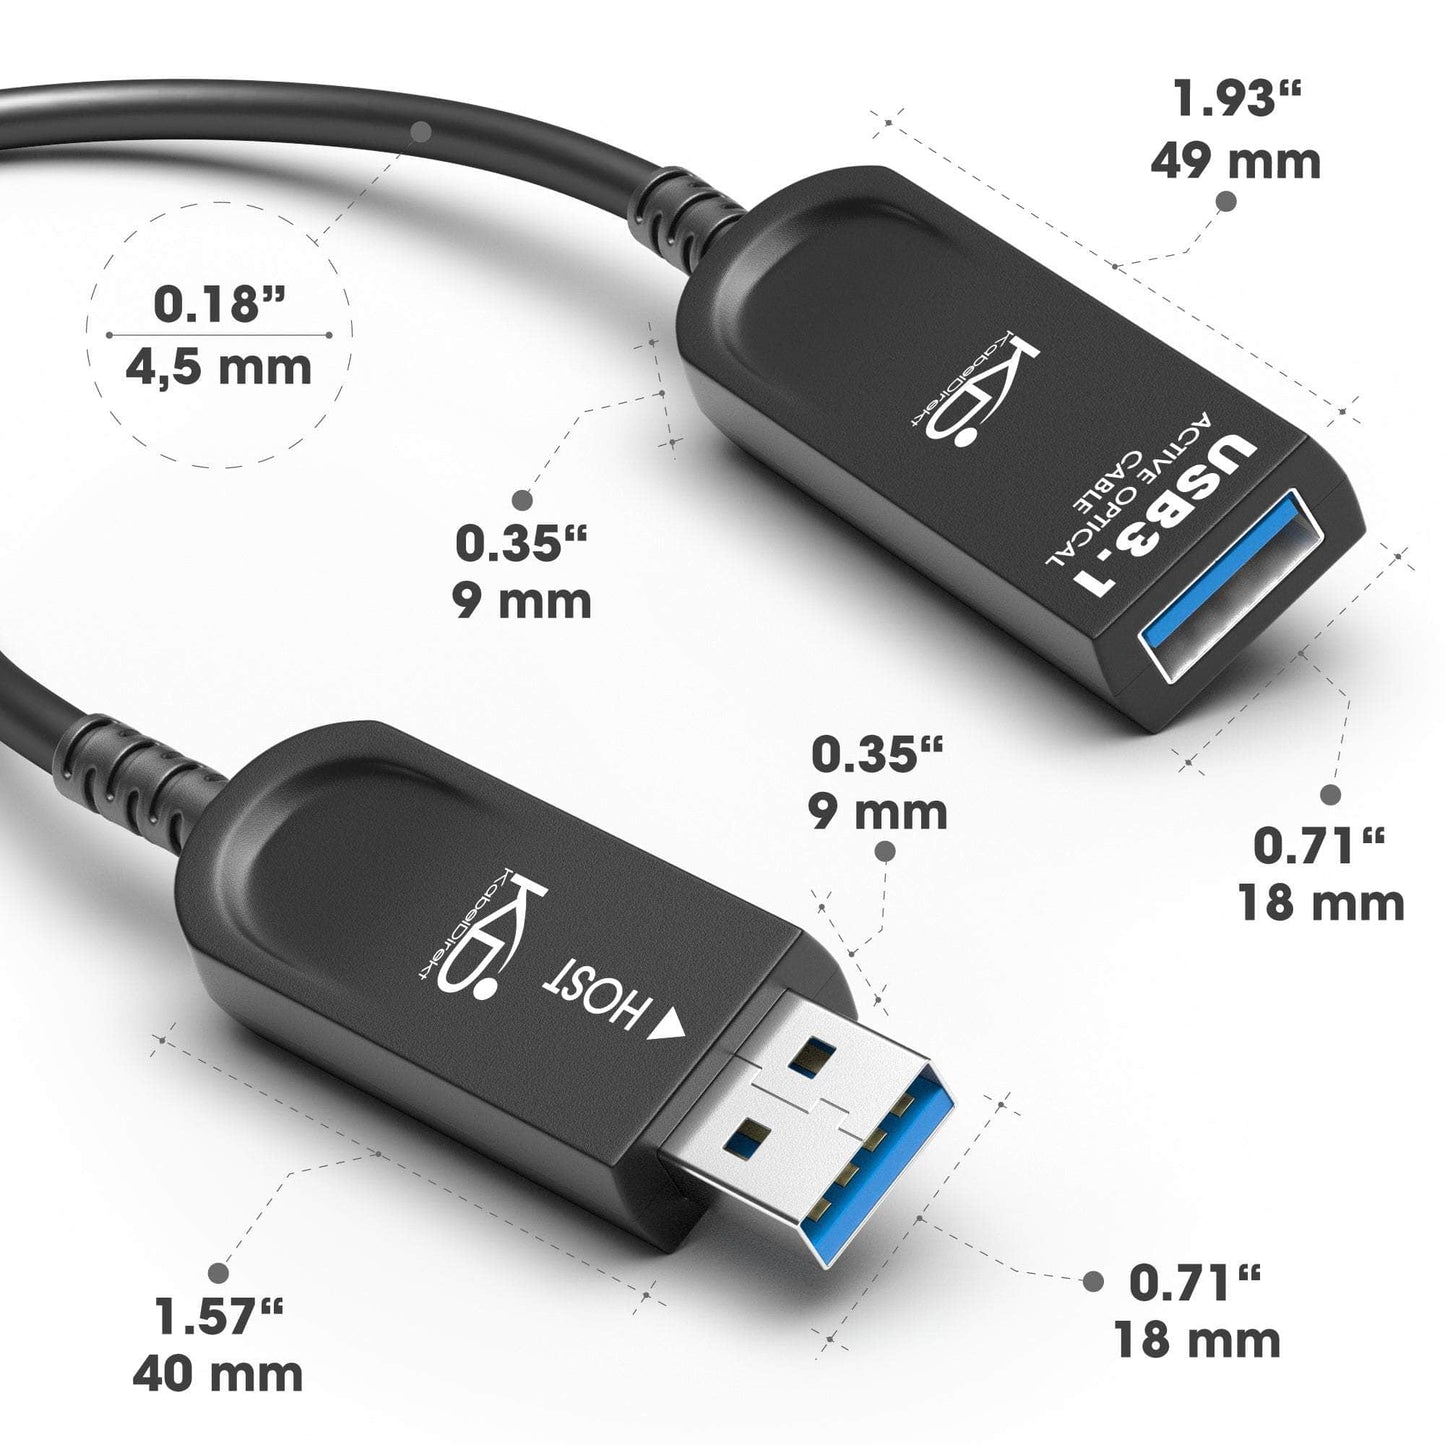 USB-Verlängerungskabel, optisch, USB 3.1 Gen2 für bis zu 10 Gbit/s